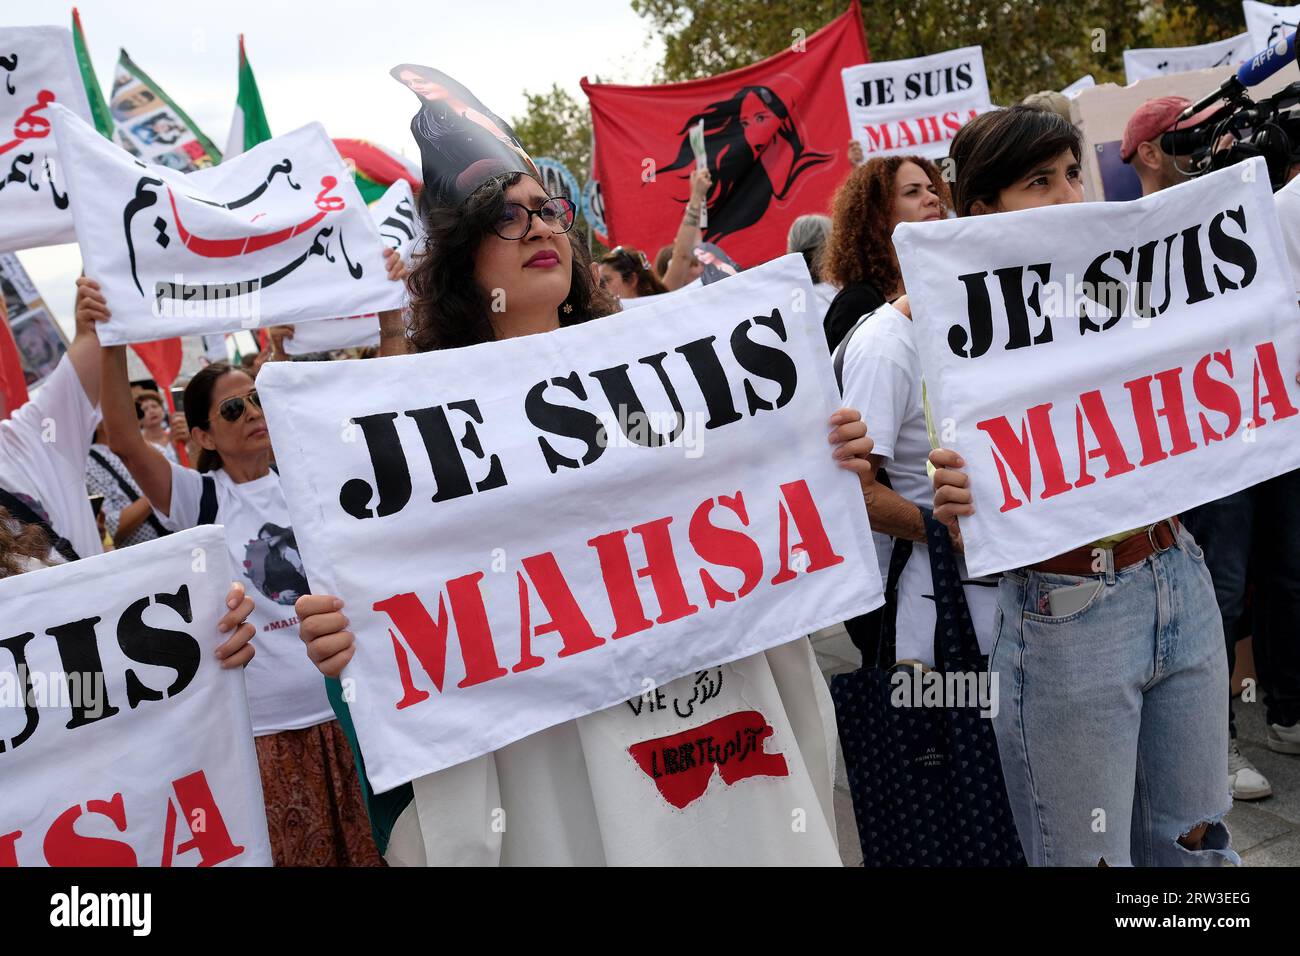 Manifestation à Paris pour le 1er anniversaire de la mort de Mahsa Amini en Iran.plusieurs centaines de personnes au départ du cortège à la Bastille Stockfoto